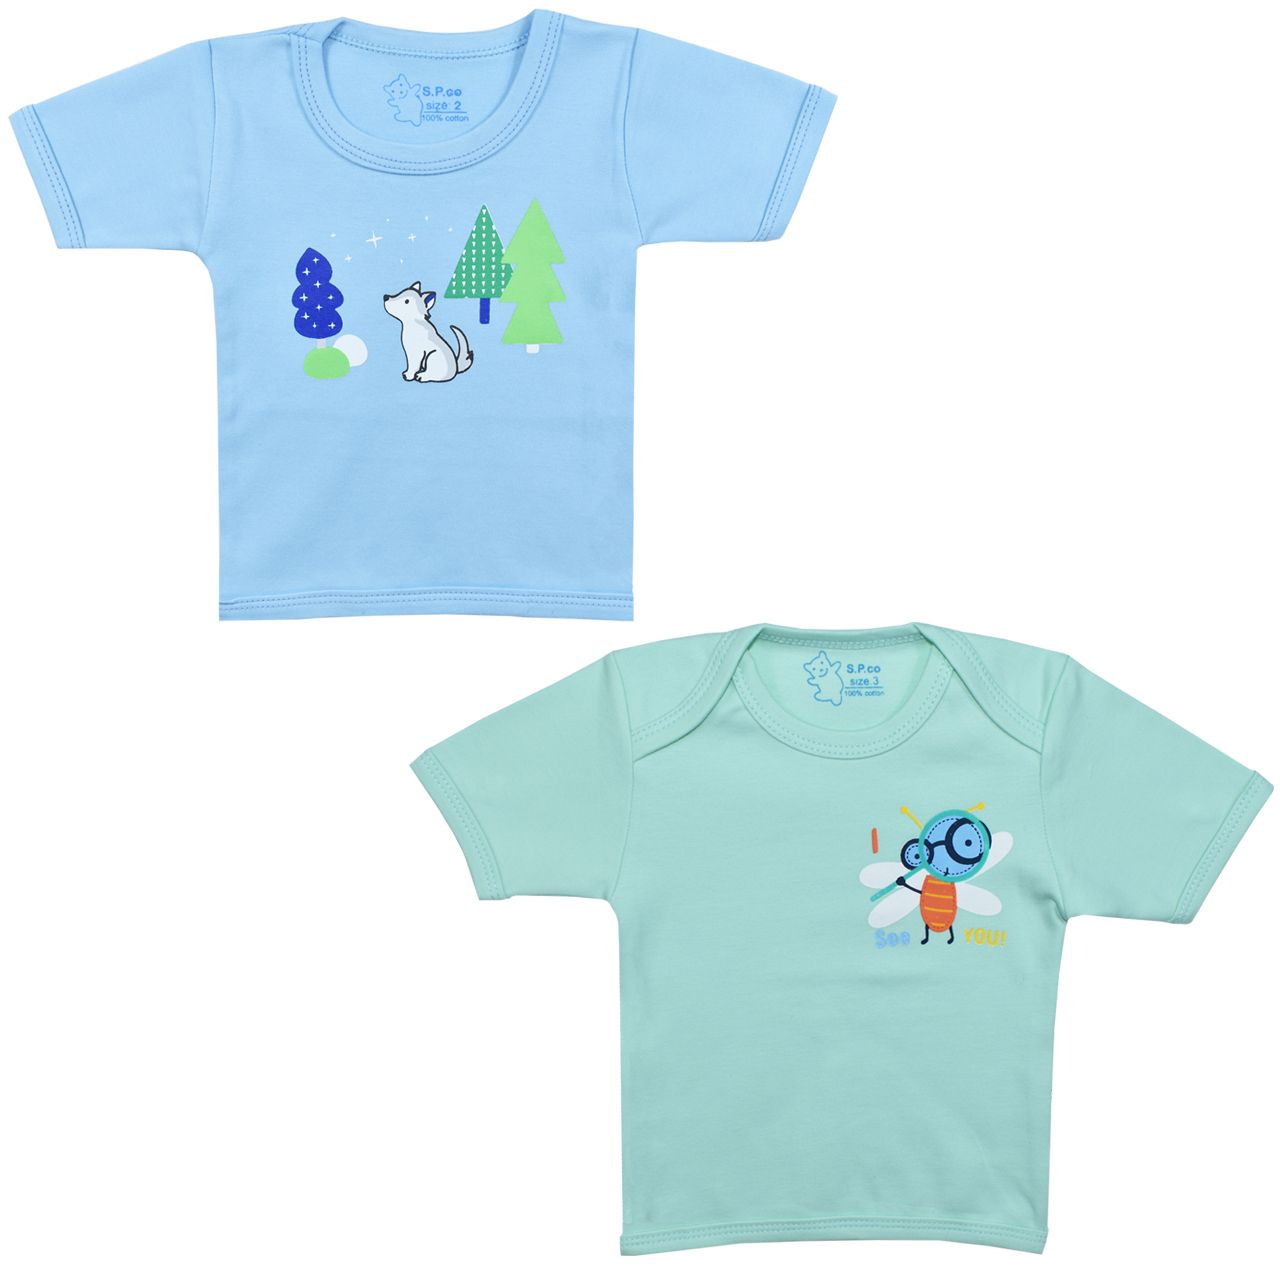 تی شرت آستین کوتاه نوزادی اسپیکو کد 301 -4 بسته دو عددی -  - 1